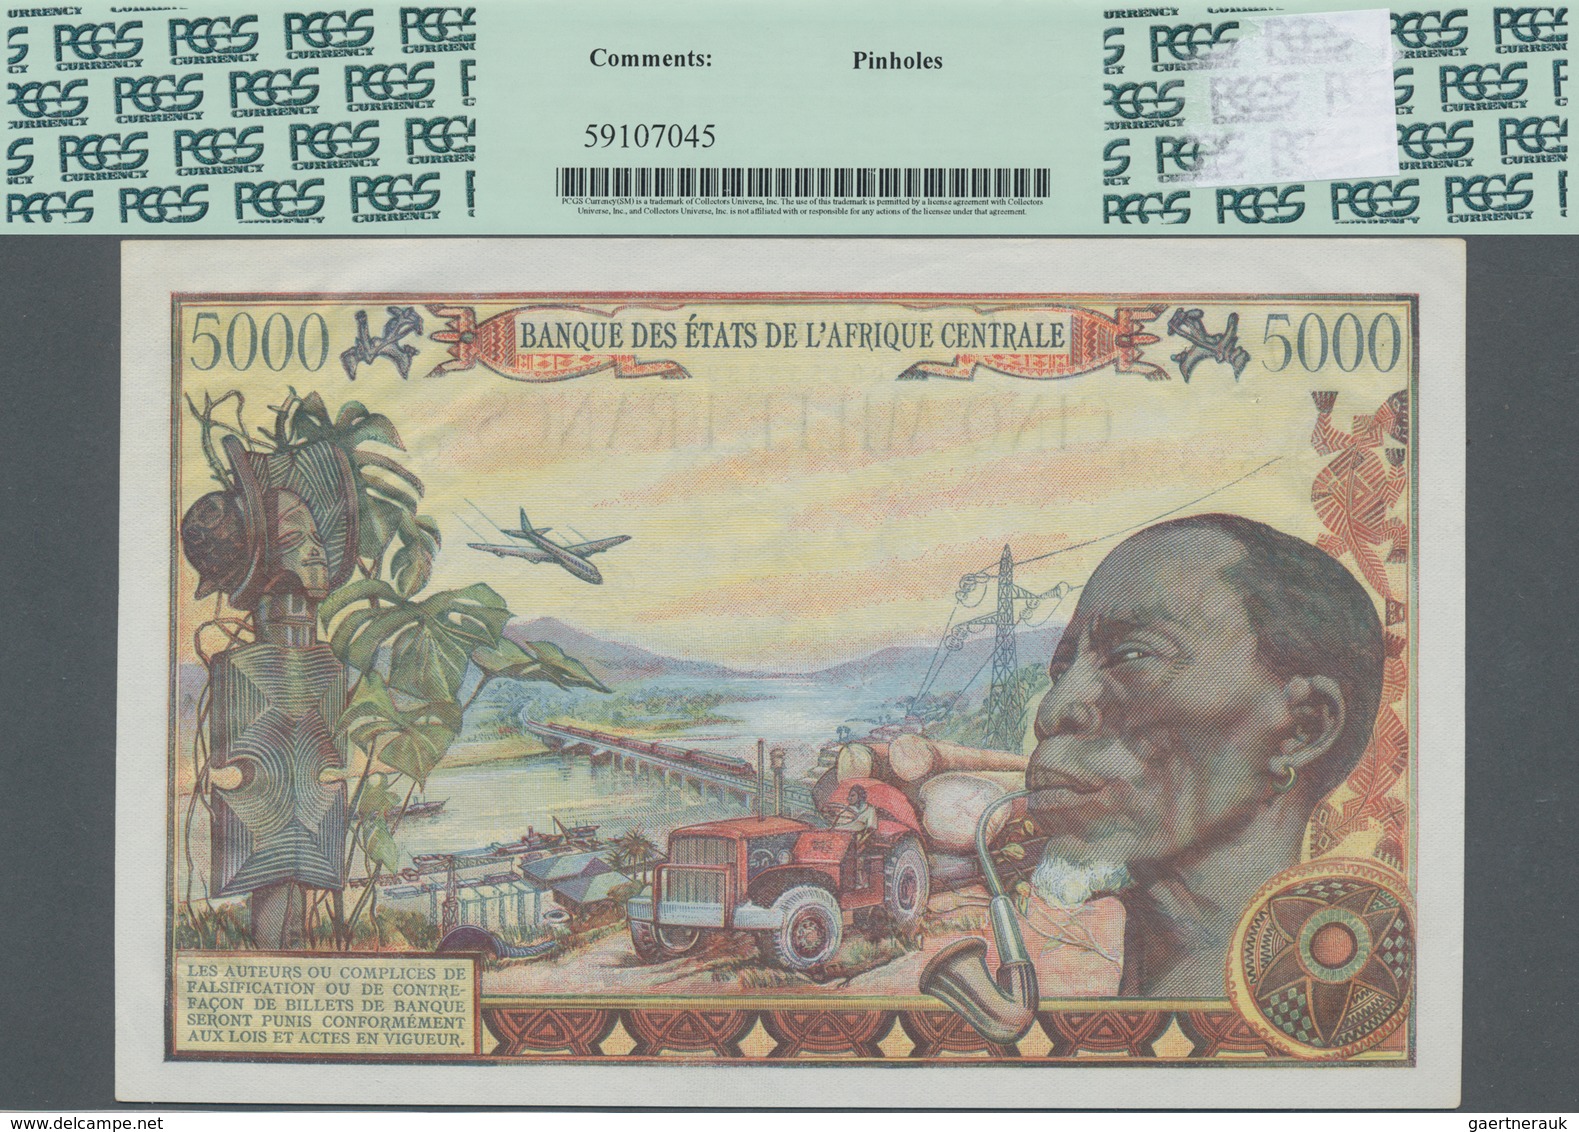 Chad / Tschad: Banque Des États De L'Afrique Centrale - République Du Tchad 5000 Francs 1980, P.8, G - Chad